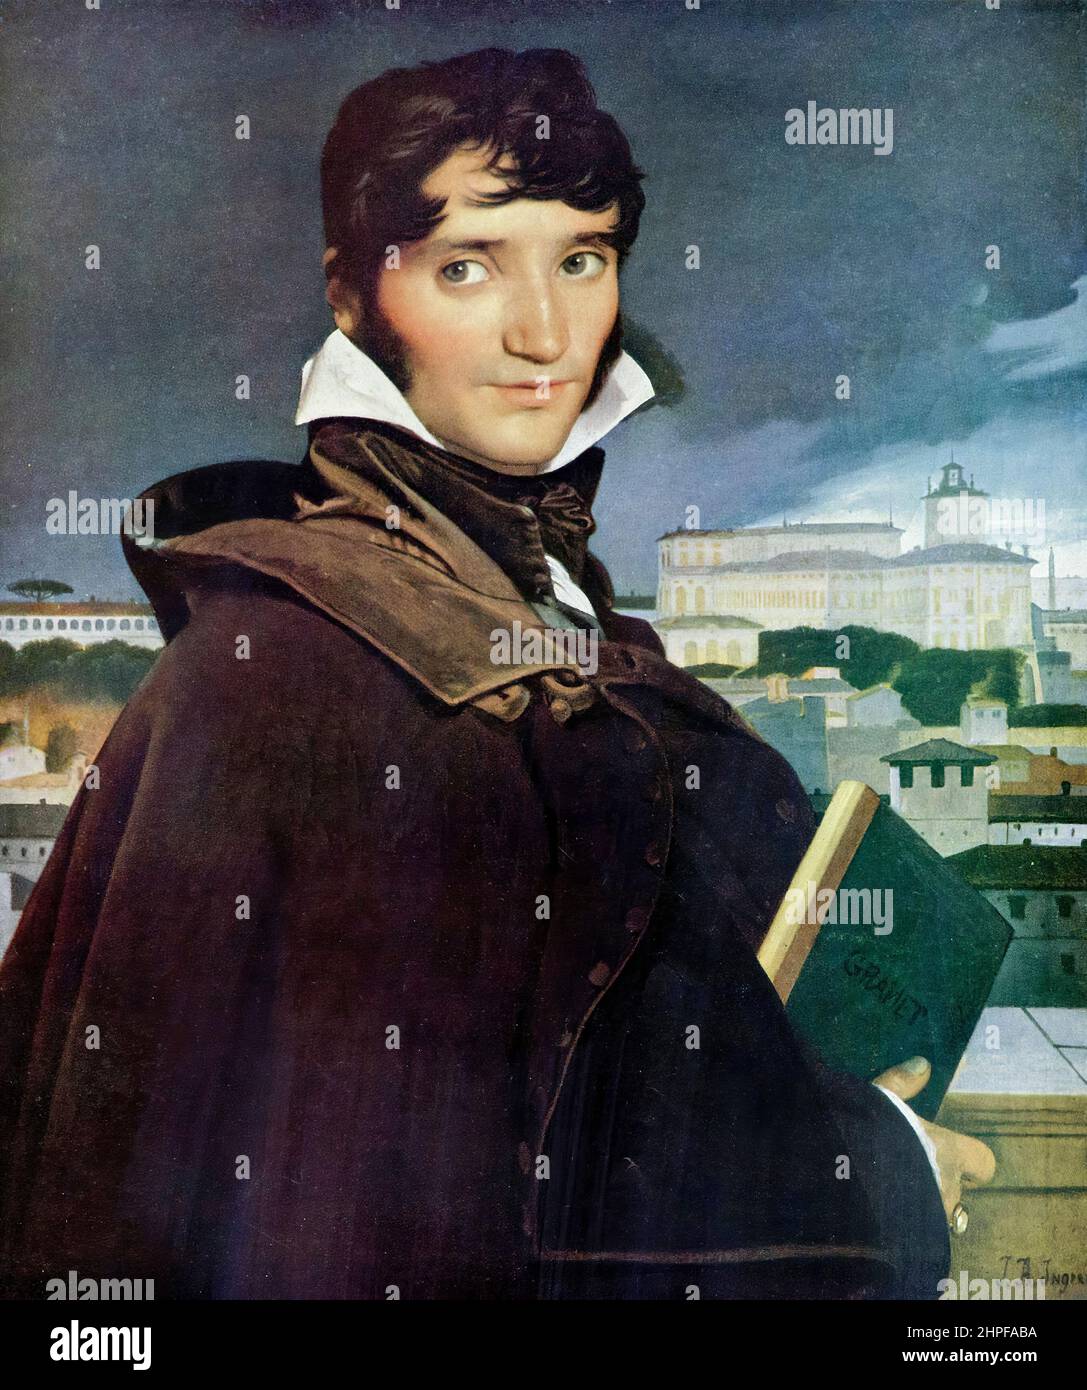 François Marius Granet (1775-1849), peintre français, peinture à l'huile sur toile par Jean Auguste Dominique Ingres, 1807 Banque D'Images